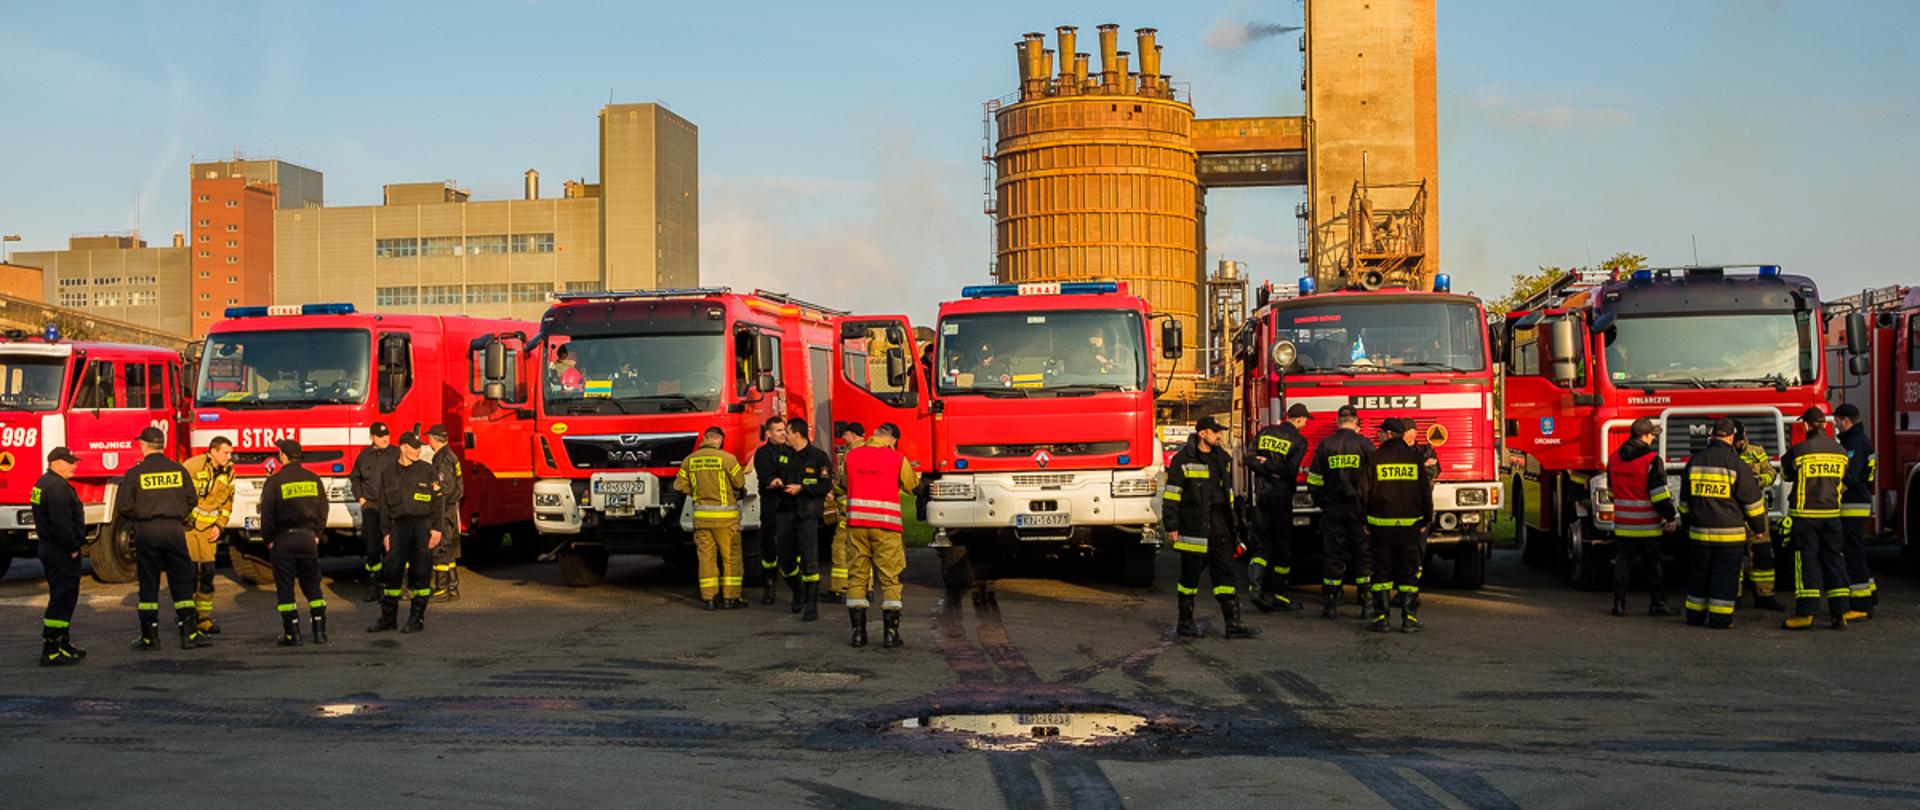 Zdjęcia przedstawiają strażaków wykonujących czynności ratownicze podczas ćwiczeń w dniu
27 października 2021 r na terenie zakładu Grupa Azoty S.A. w Tarnowie.